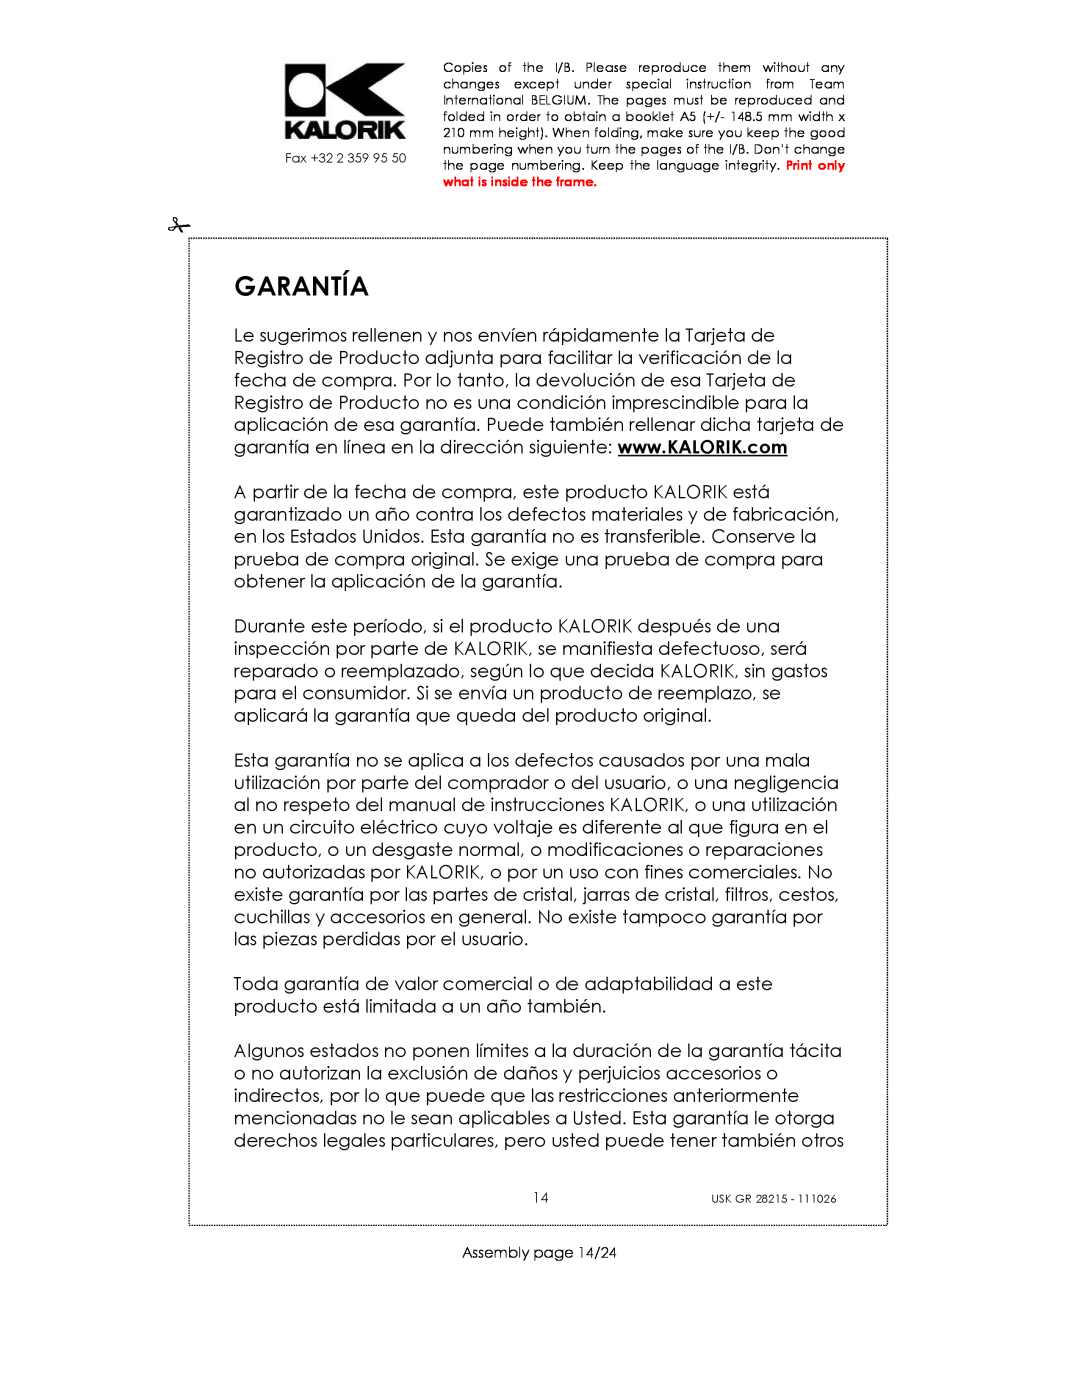 Kalorik USK GR 28215 manual Garantía, Assembly page 14/24 